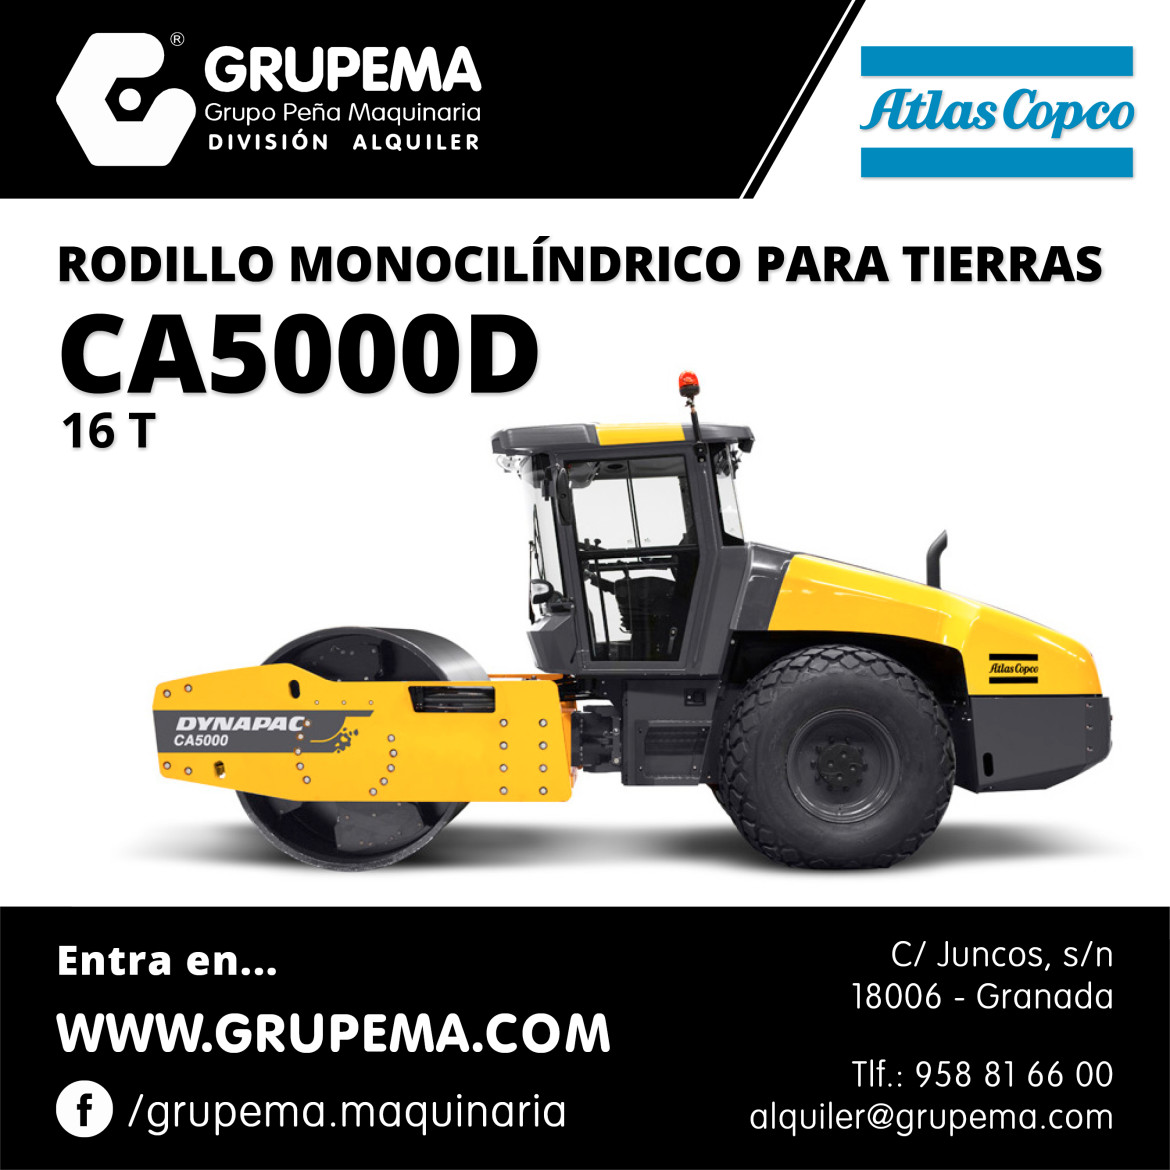 ALQUILER DE RODILLO ATLAS COPCO CA5000D